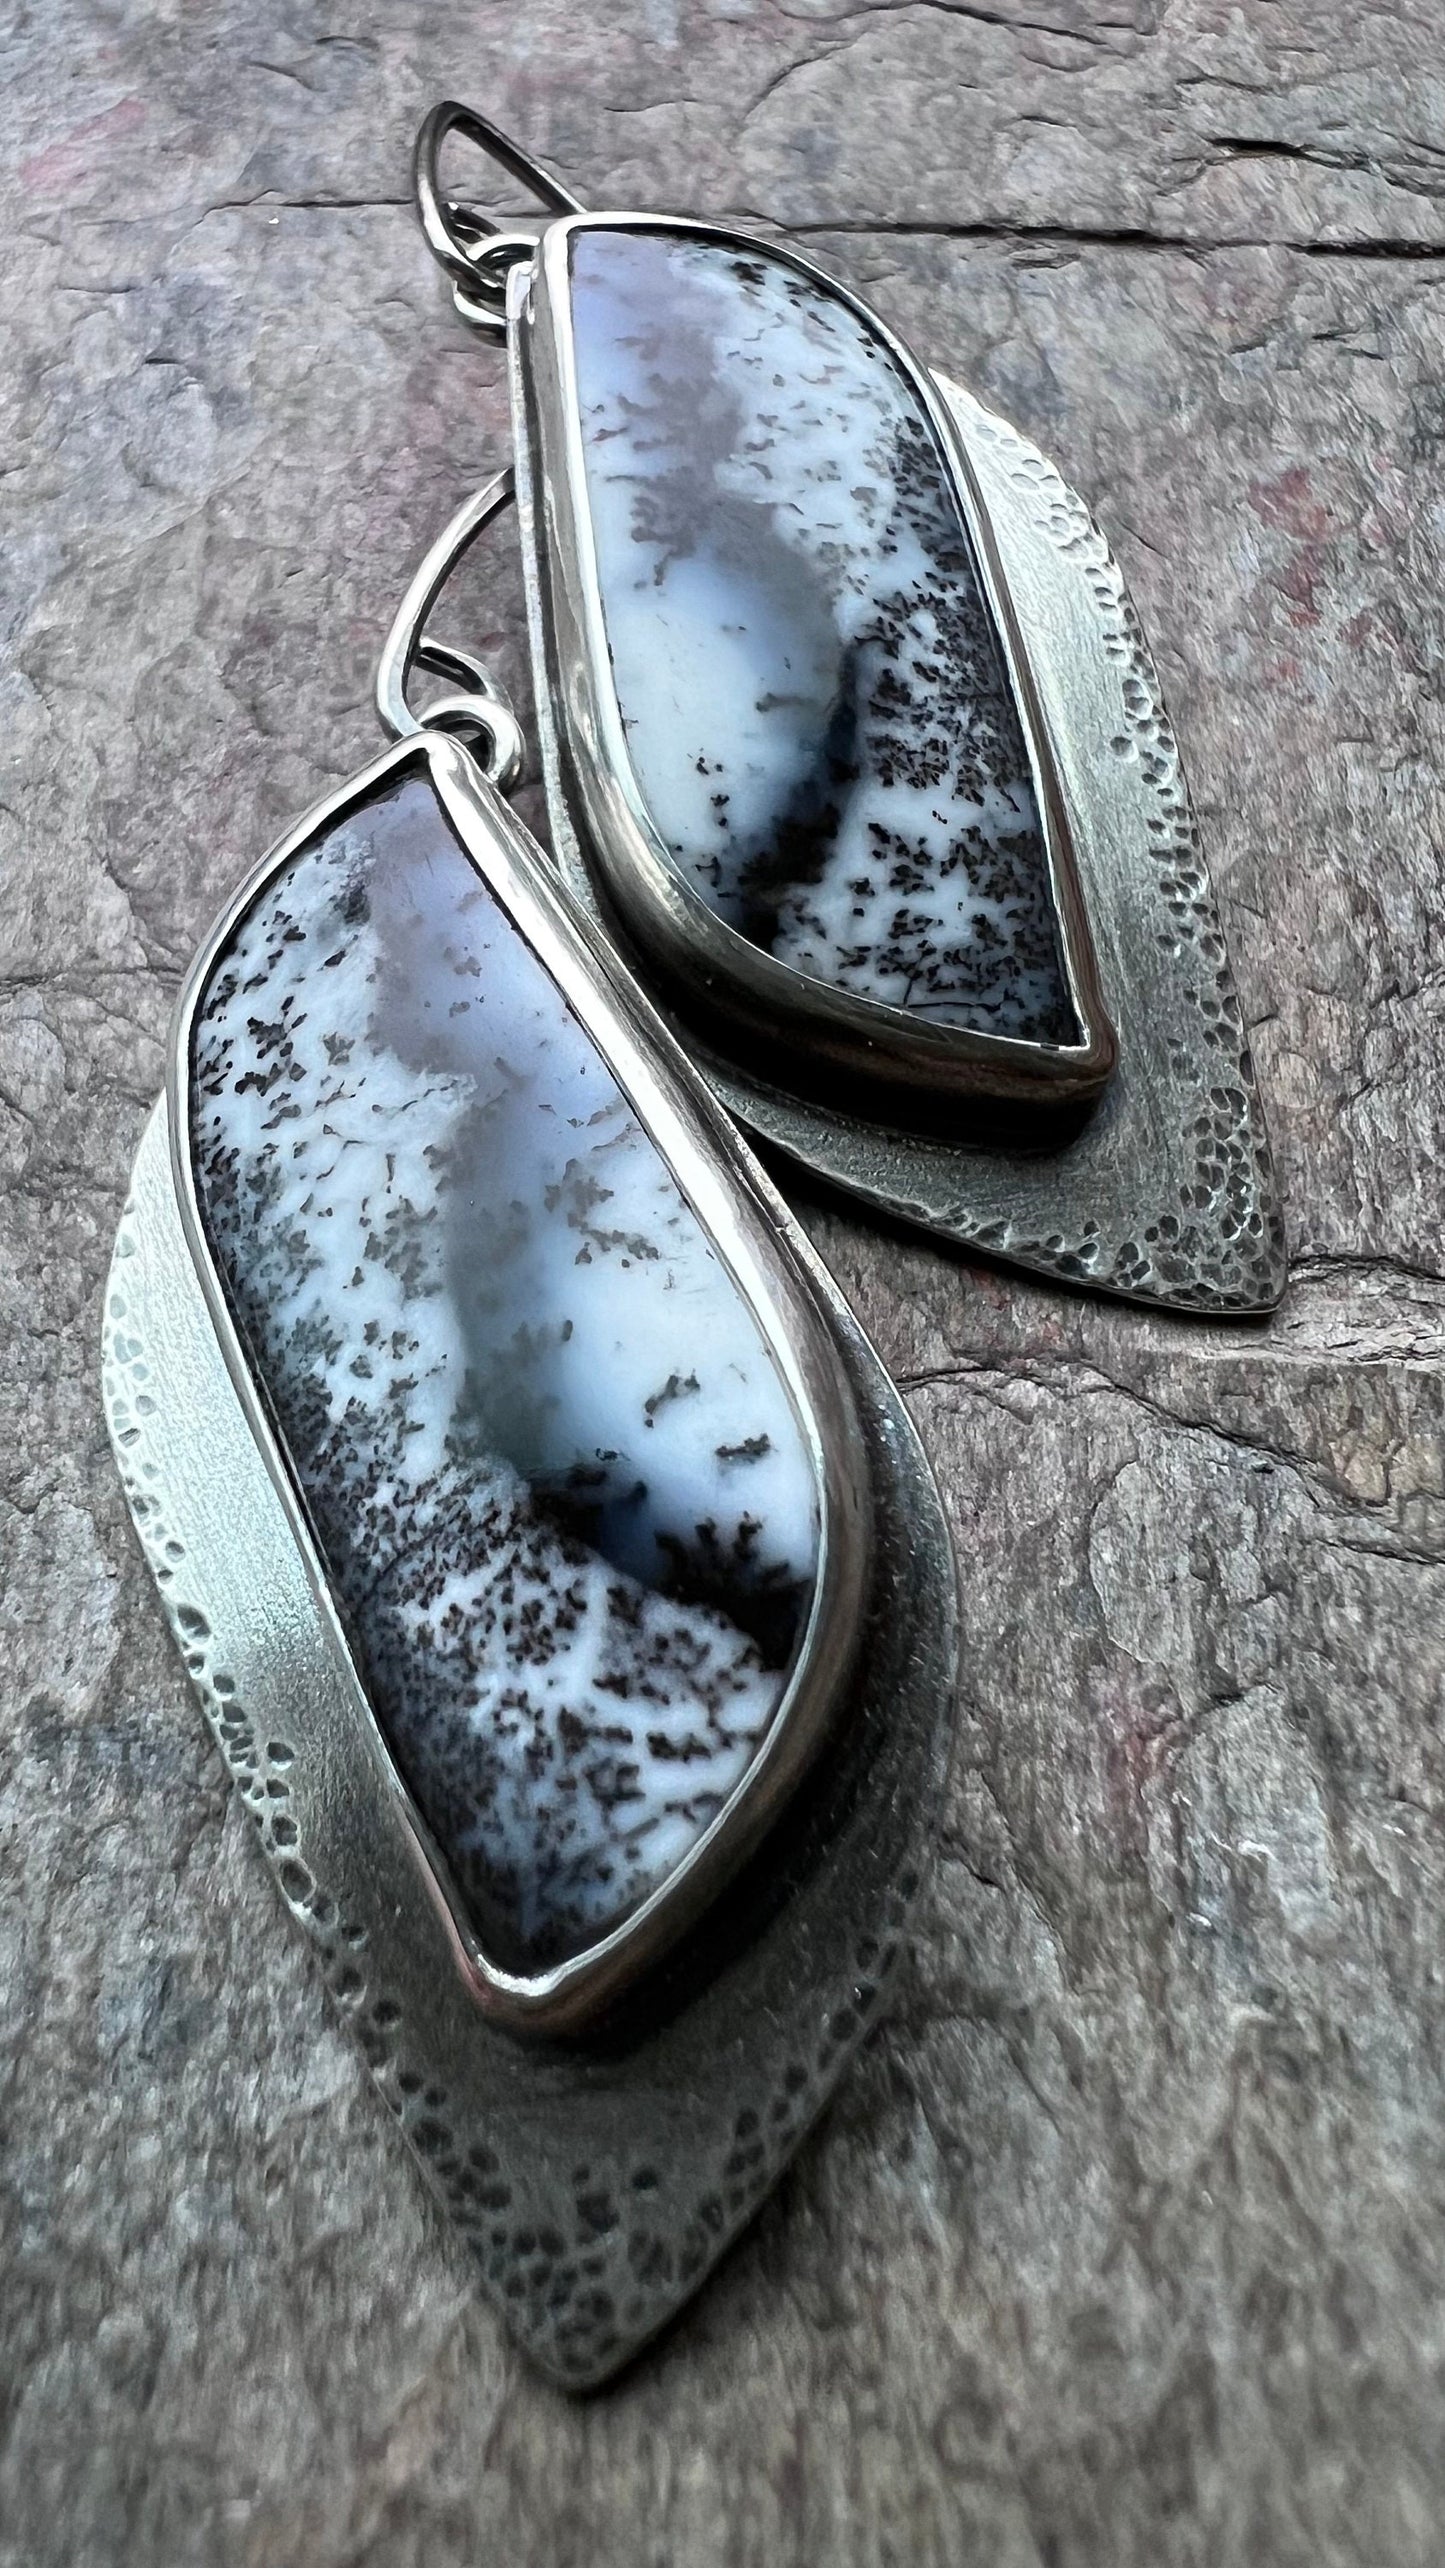 Dendritic Opal Sterling Silver Earrings - Handmade One-of-a-kind Earrings